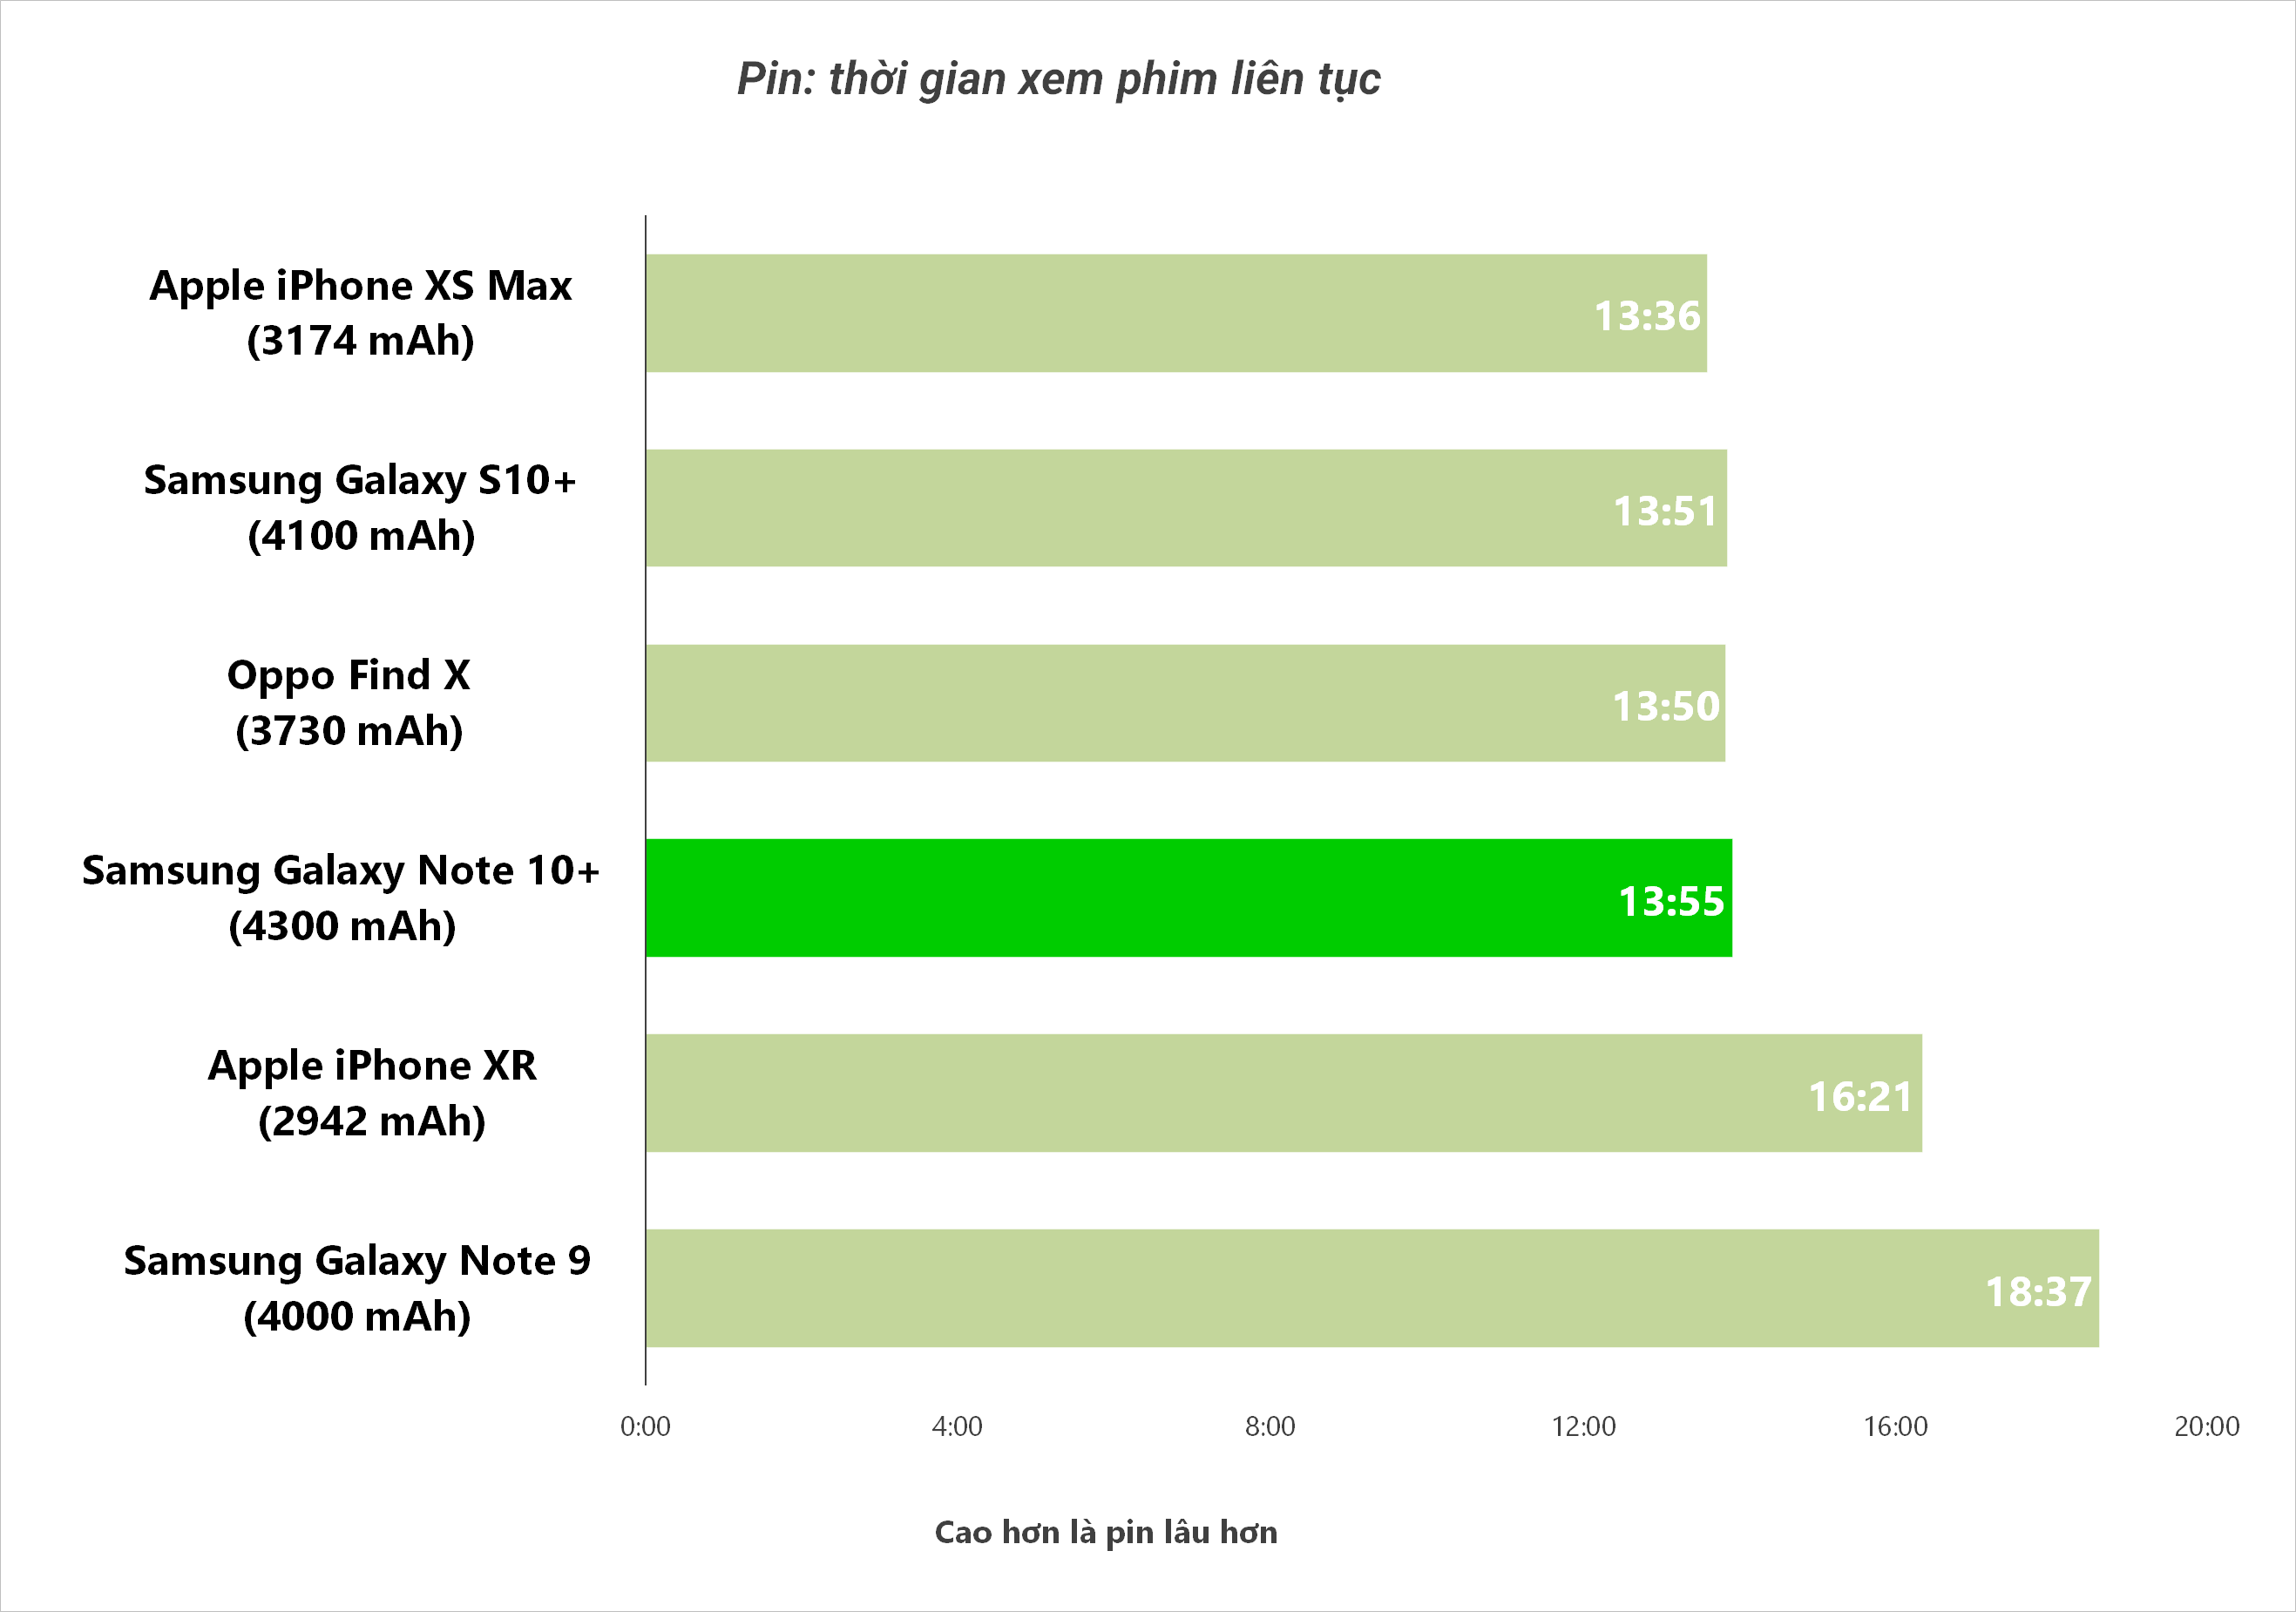 Đánh giá pin Samsung Galaxy Note 10+: "trâu" ngang ngửa S10+ nhưng sạc nhanh gần gấp đôi